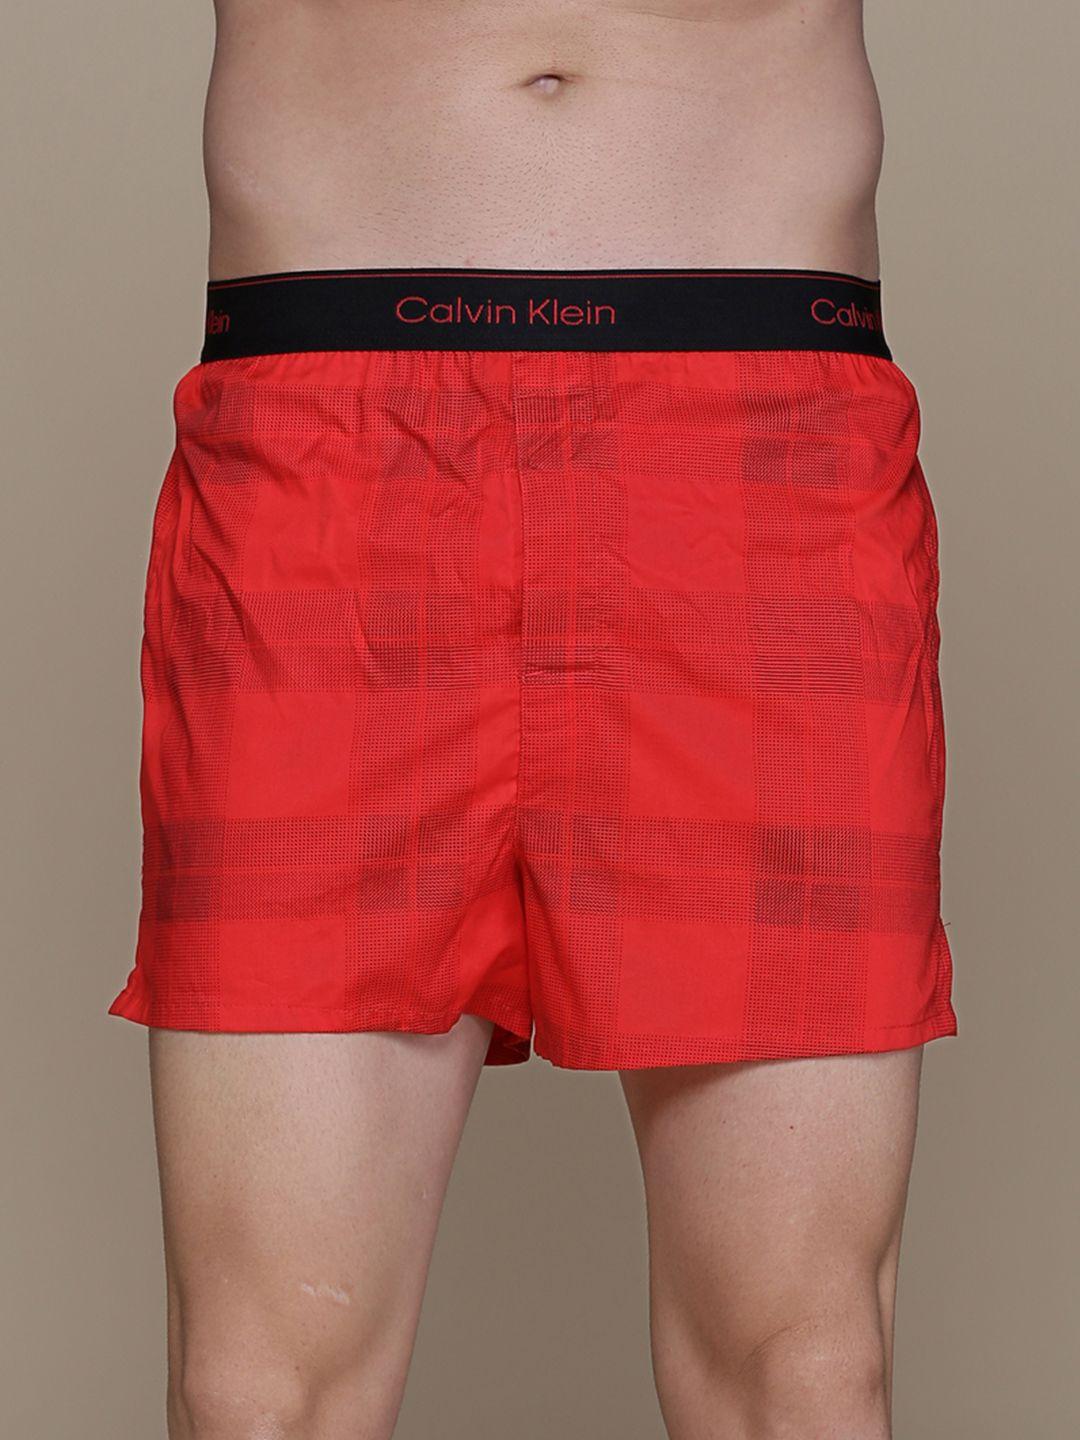 calvin-klein-underwear-men-red-checked-boxers-nb33615vn